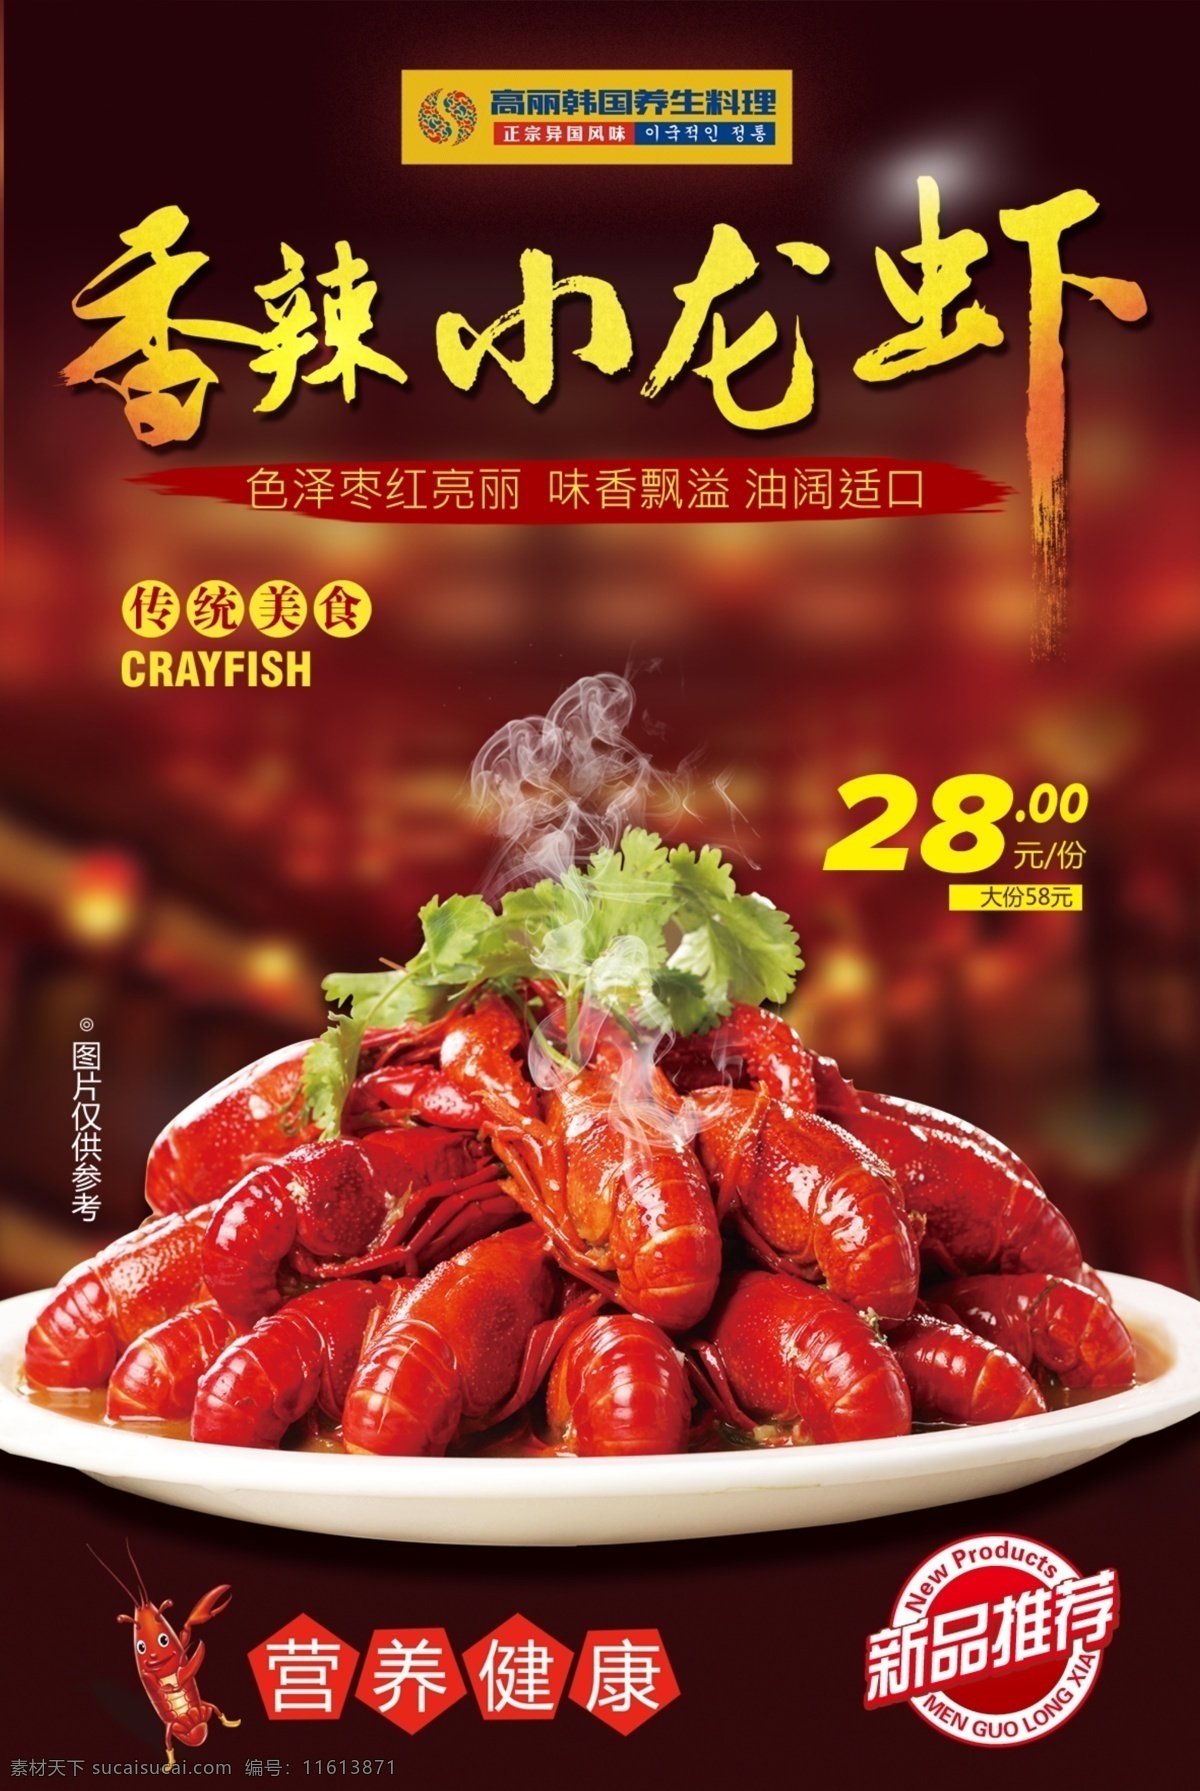 香辣小龙虾 美食素材 小龙虾 新品推荐 传统美食 红色